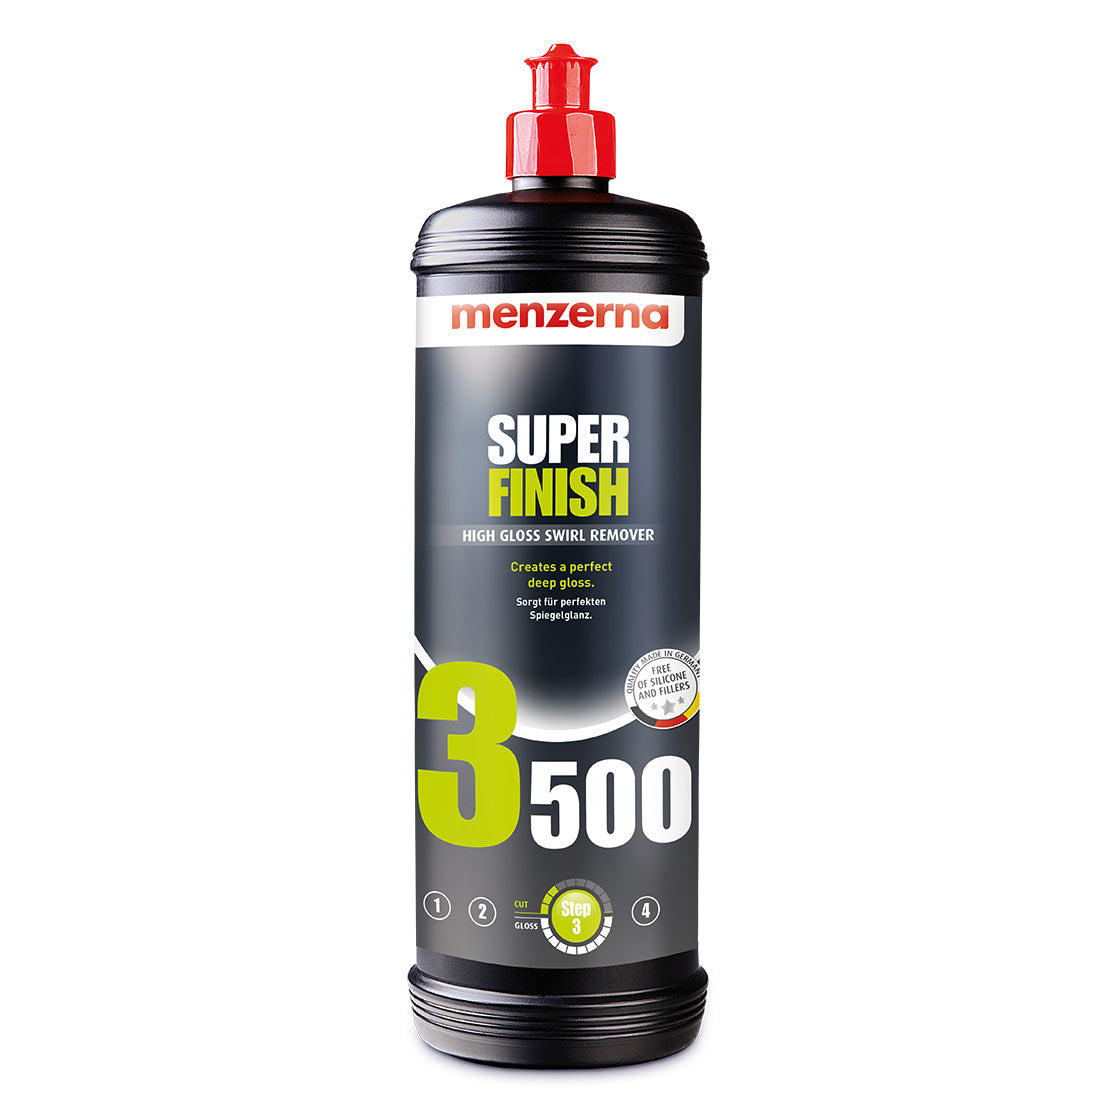 Menzerna Super Finish 3500 (PO106FA)